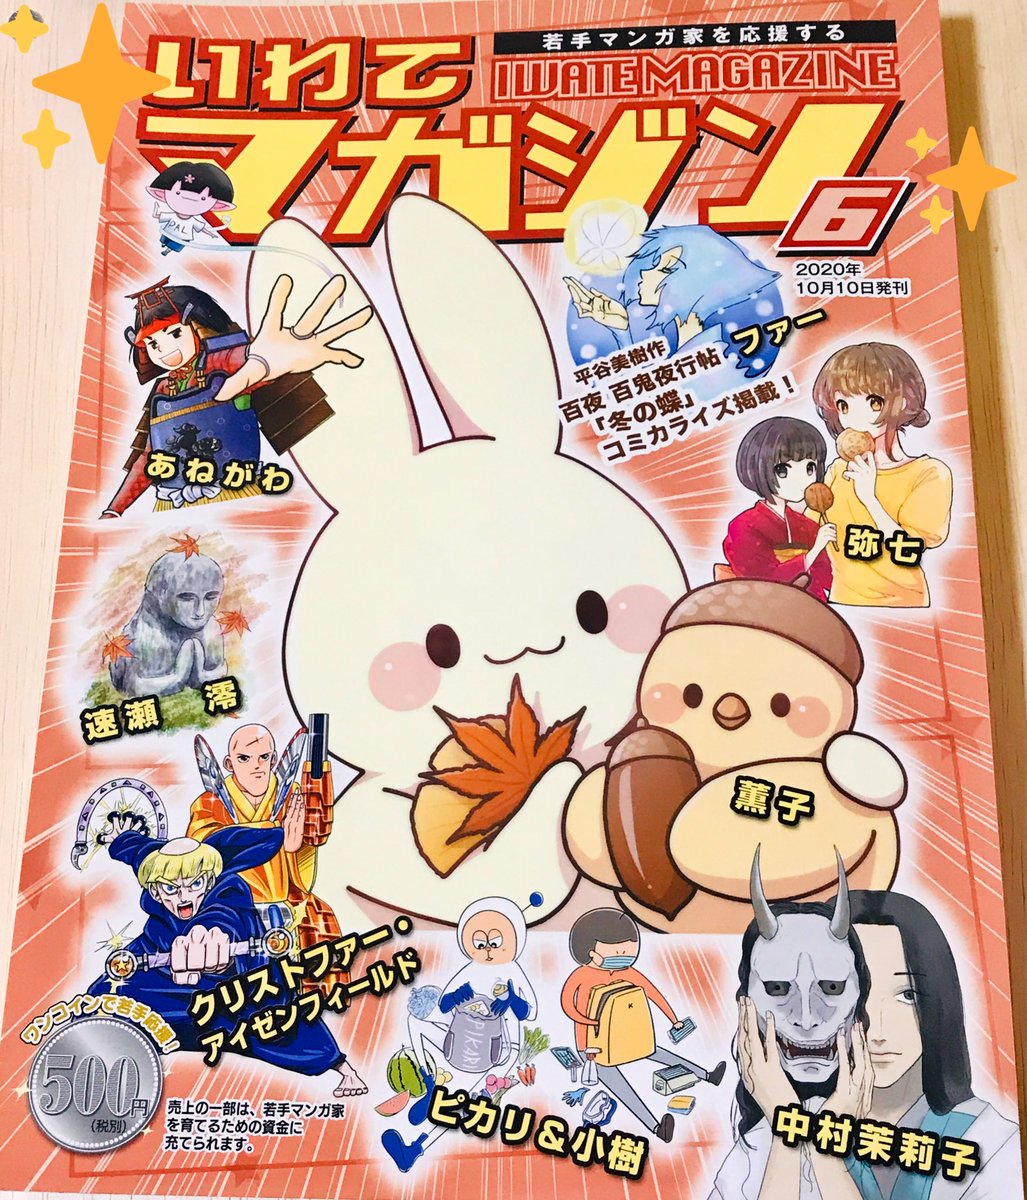 私もいわてマガジン6号ゲットしておりましたー!
弥七さんの漫画が読めて嬉しい!可愛い座敷童ちゃんたち、そして切なさもあり…素敵でした🙏✨ 